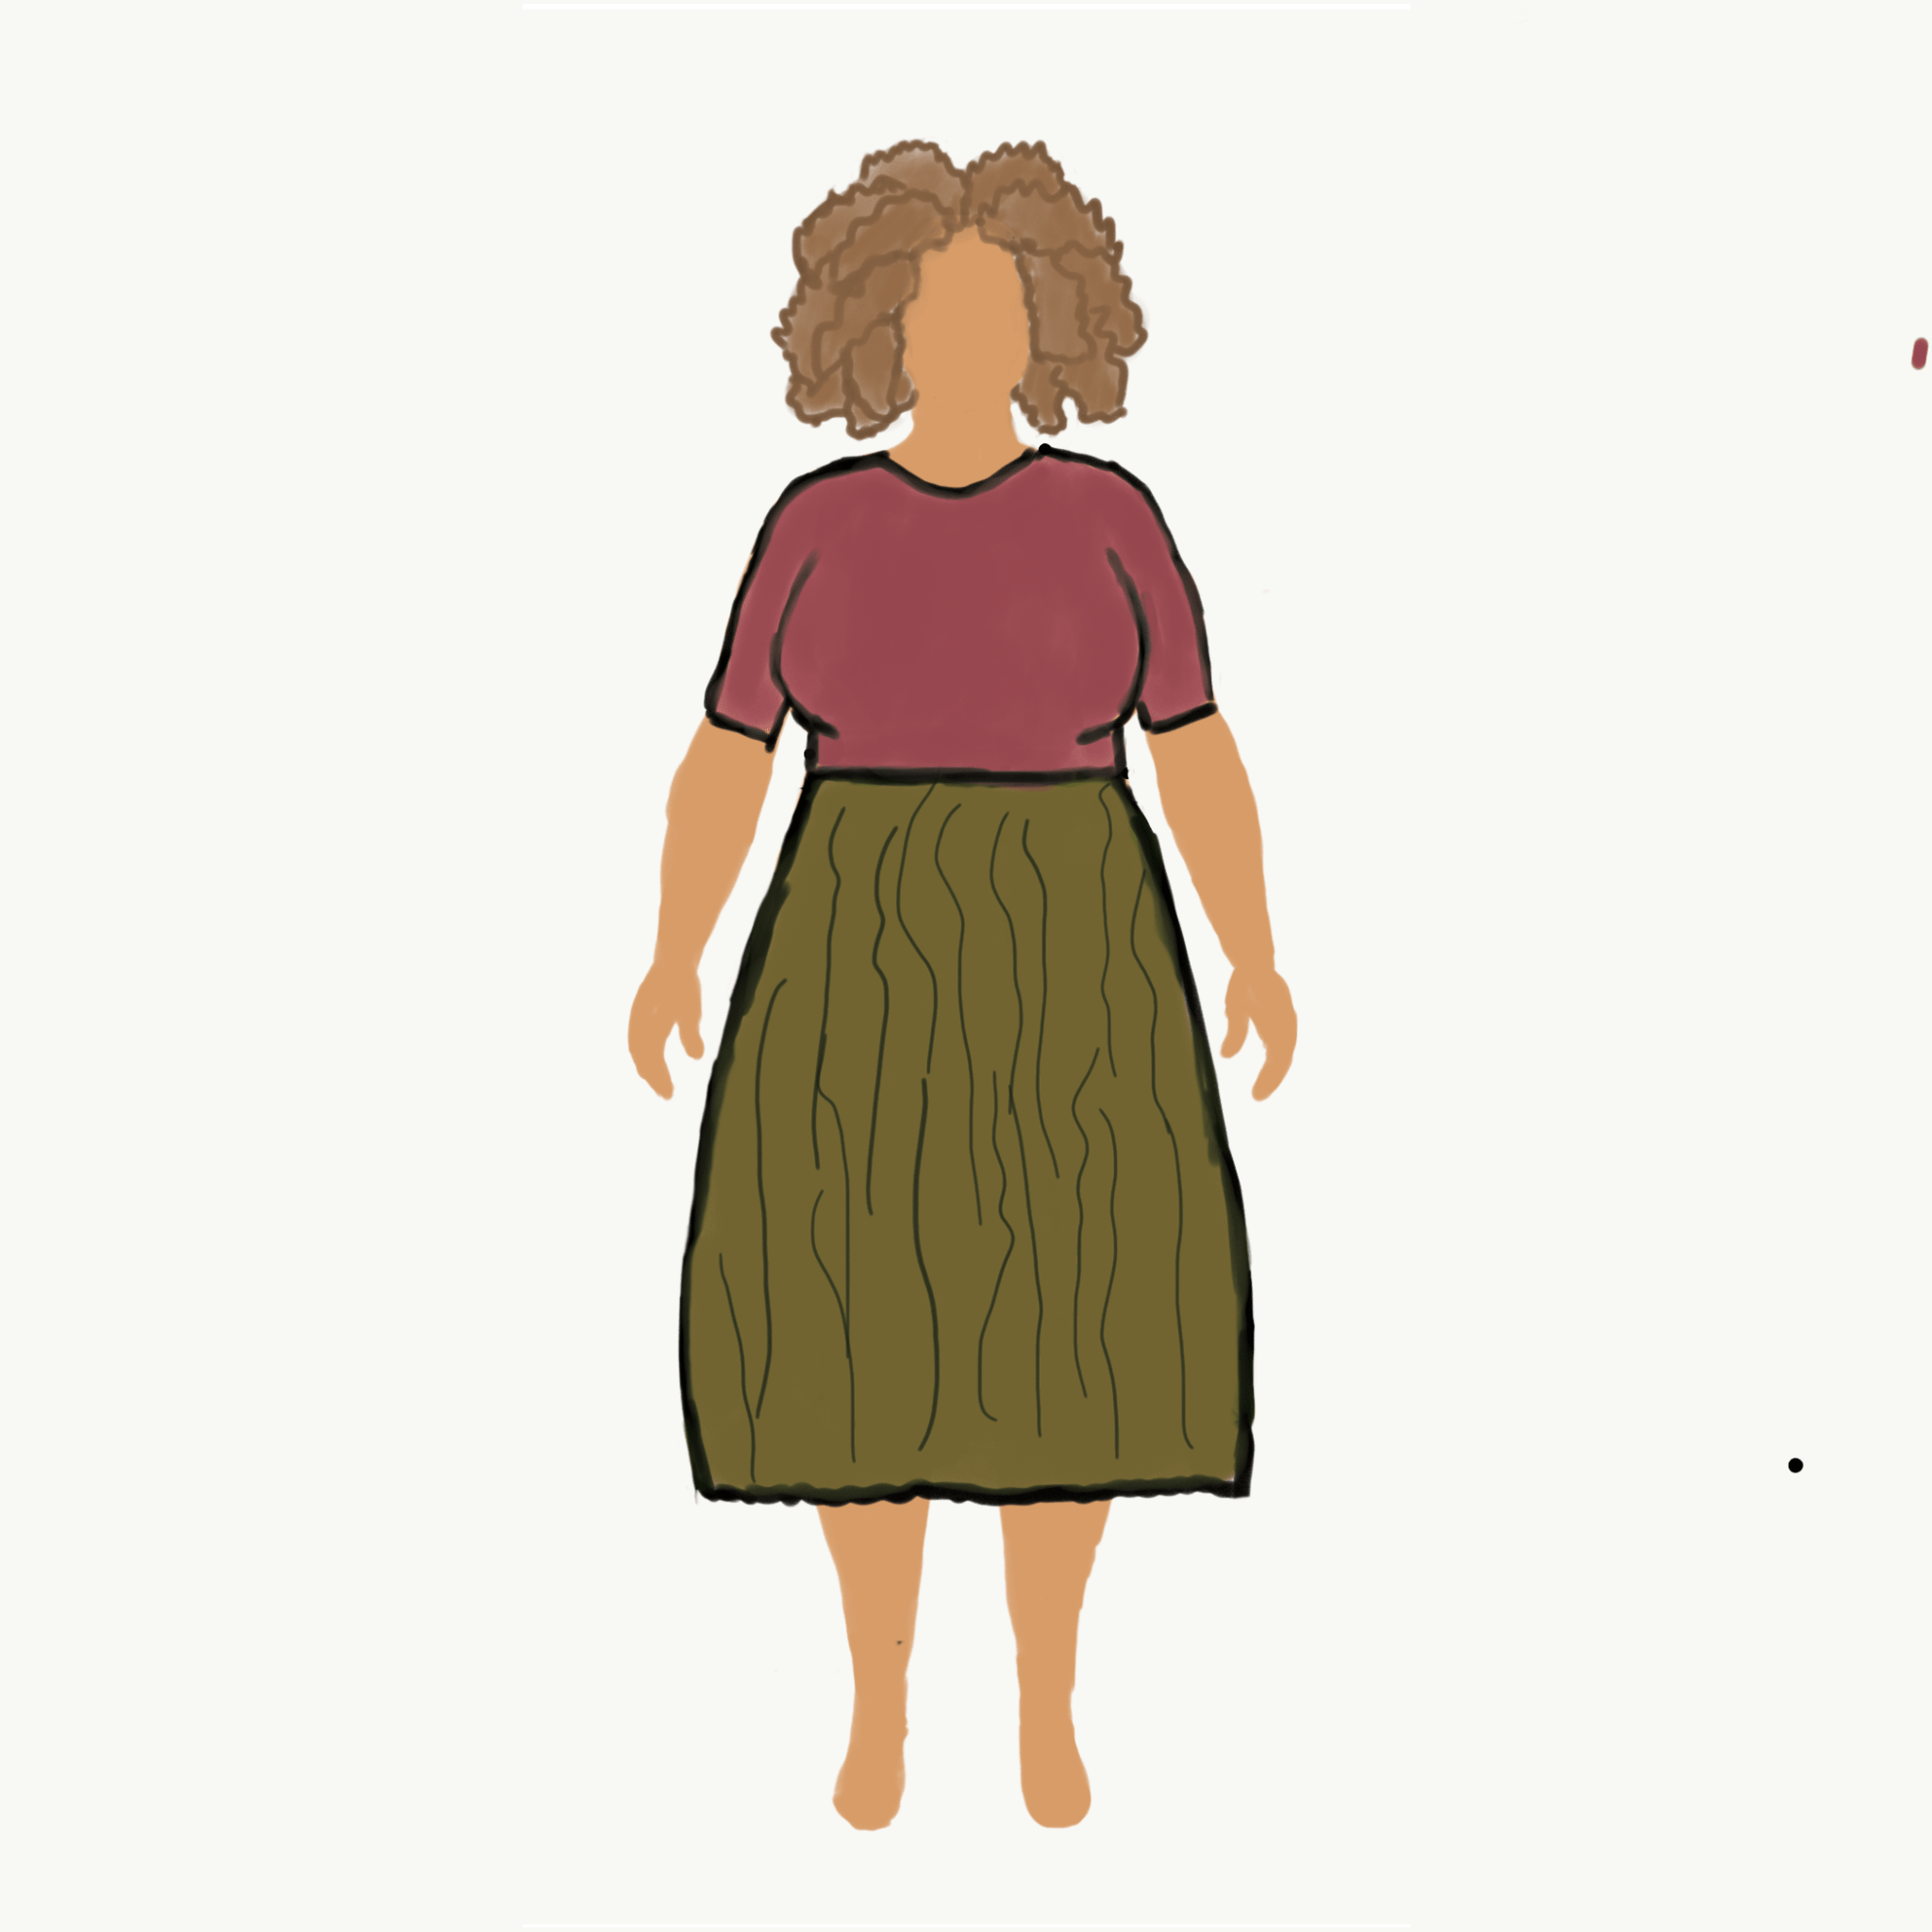 MyBodyModel Sketch - Skirt in Olive Crinkle Linen by Sierra Burrell